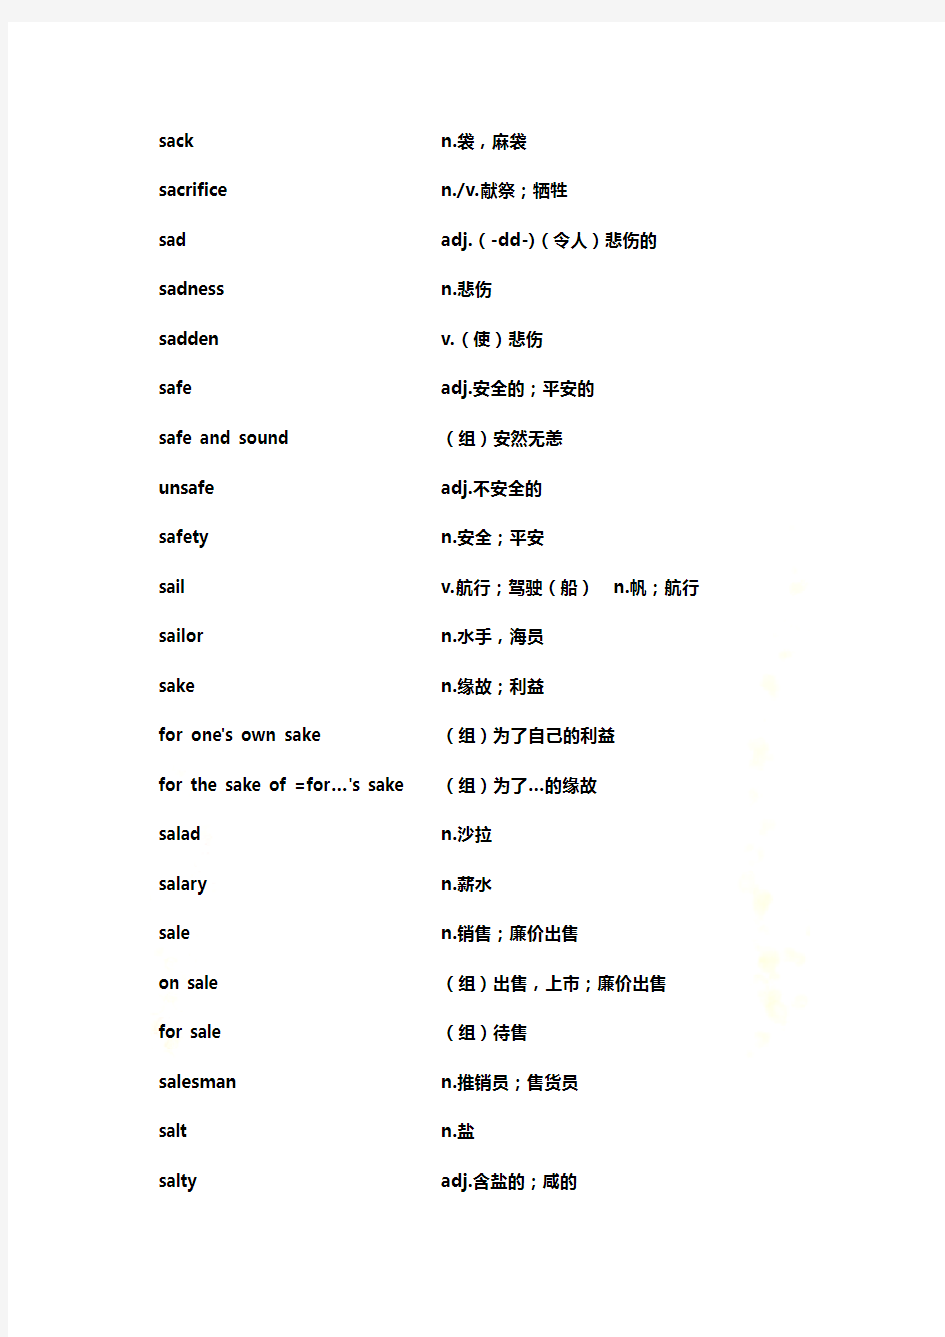 上海高考词汇手册(及时雨)S